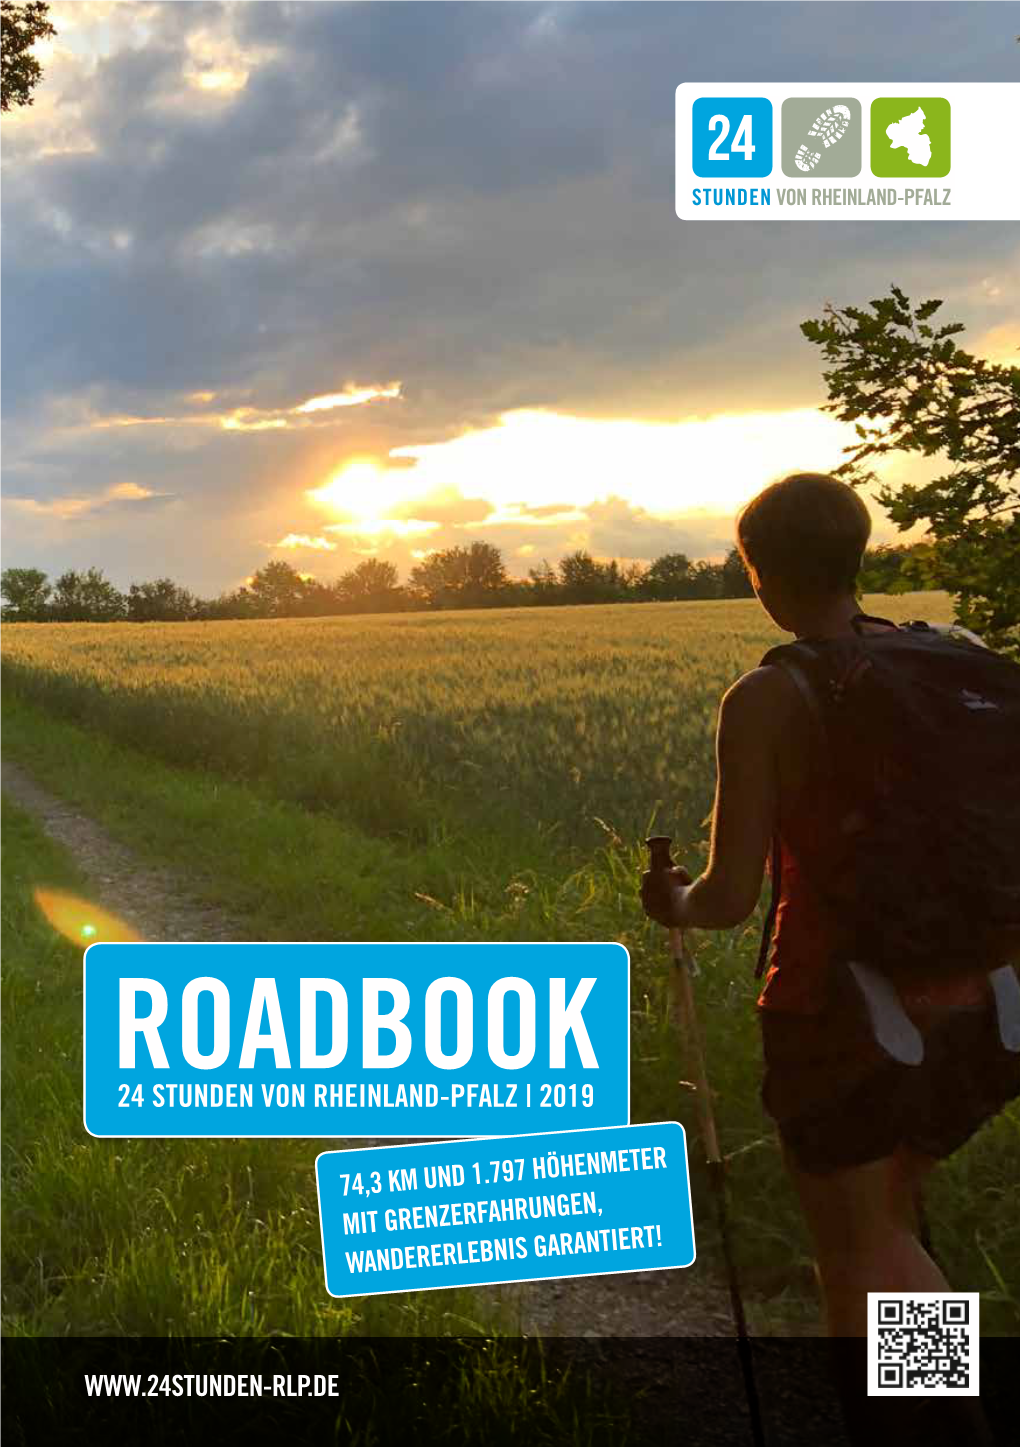 Roadbook 24 Stunden Von Rheinland-Pfalz | 2019